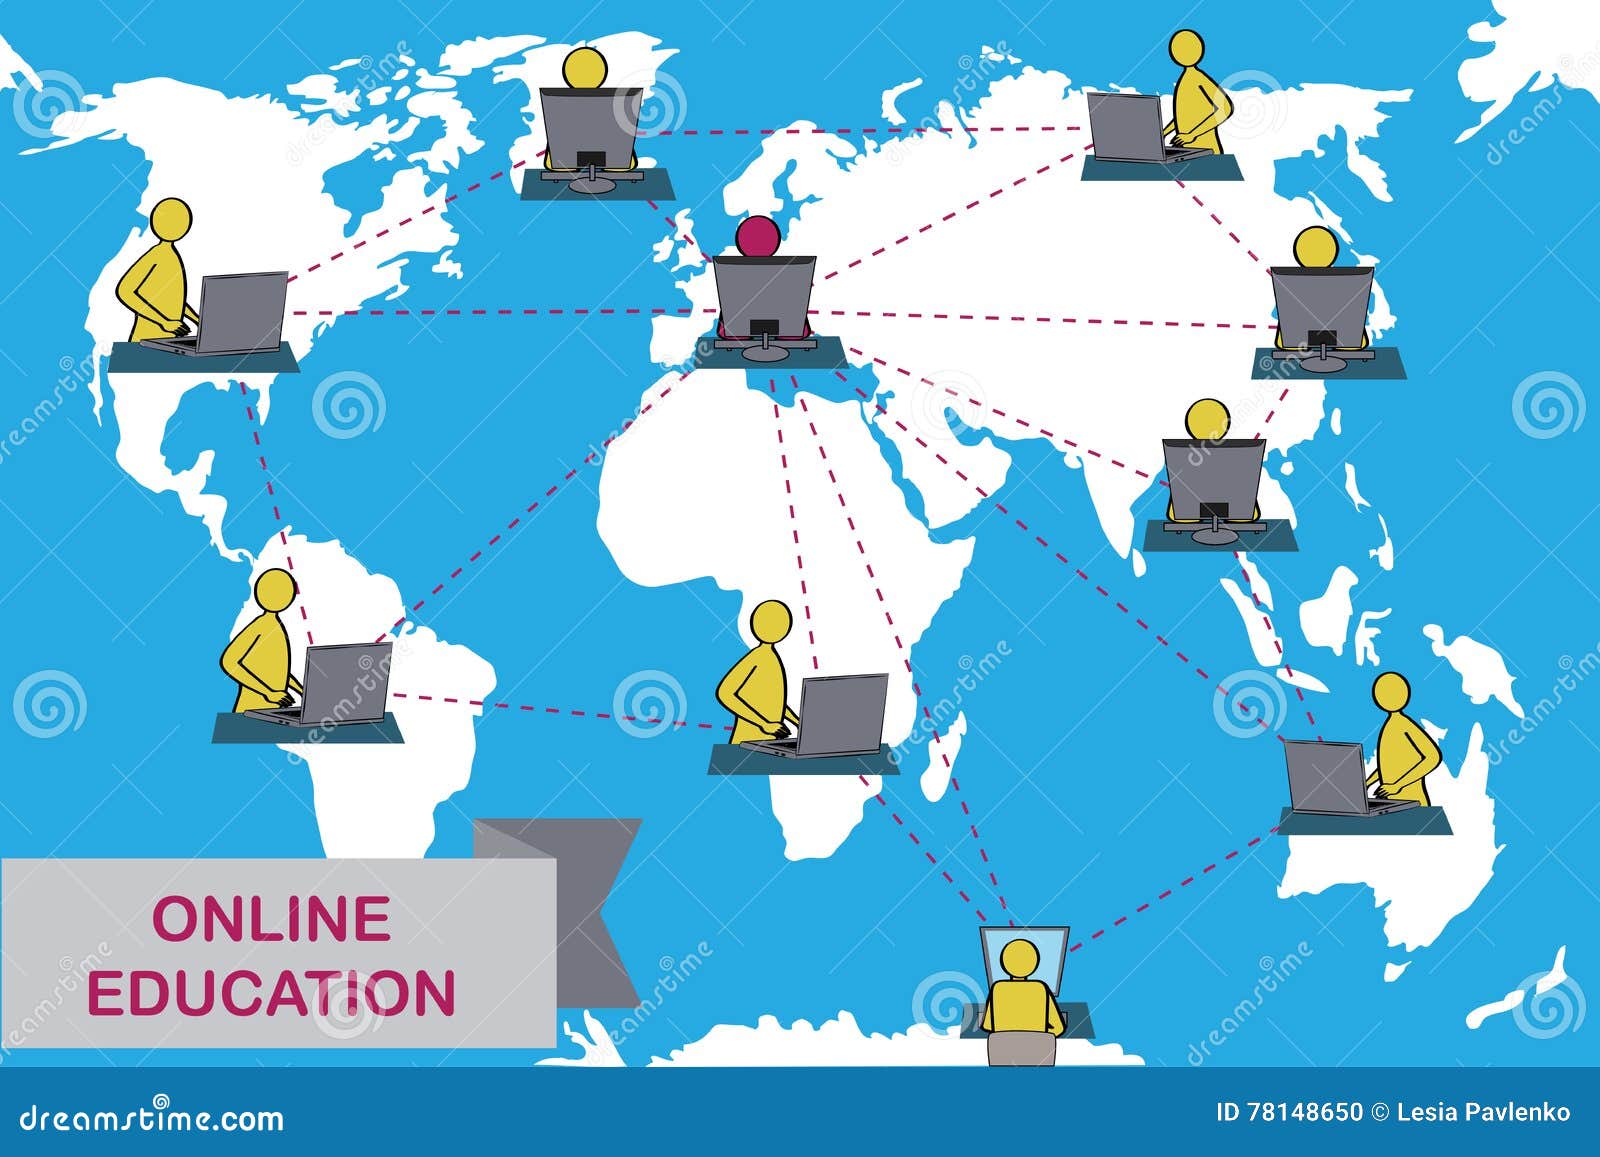 Concept de formation à distance et d'apprentissage en ligne Le tuteur instruit des étudiants de différents pays Fond de carte de la terre Variante européenne de professeur